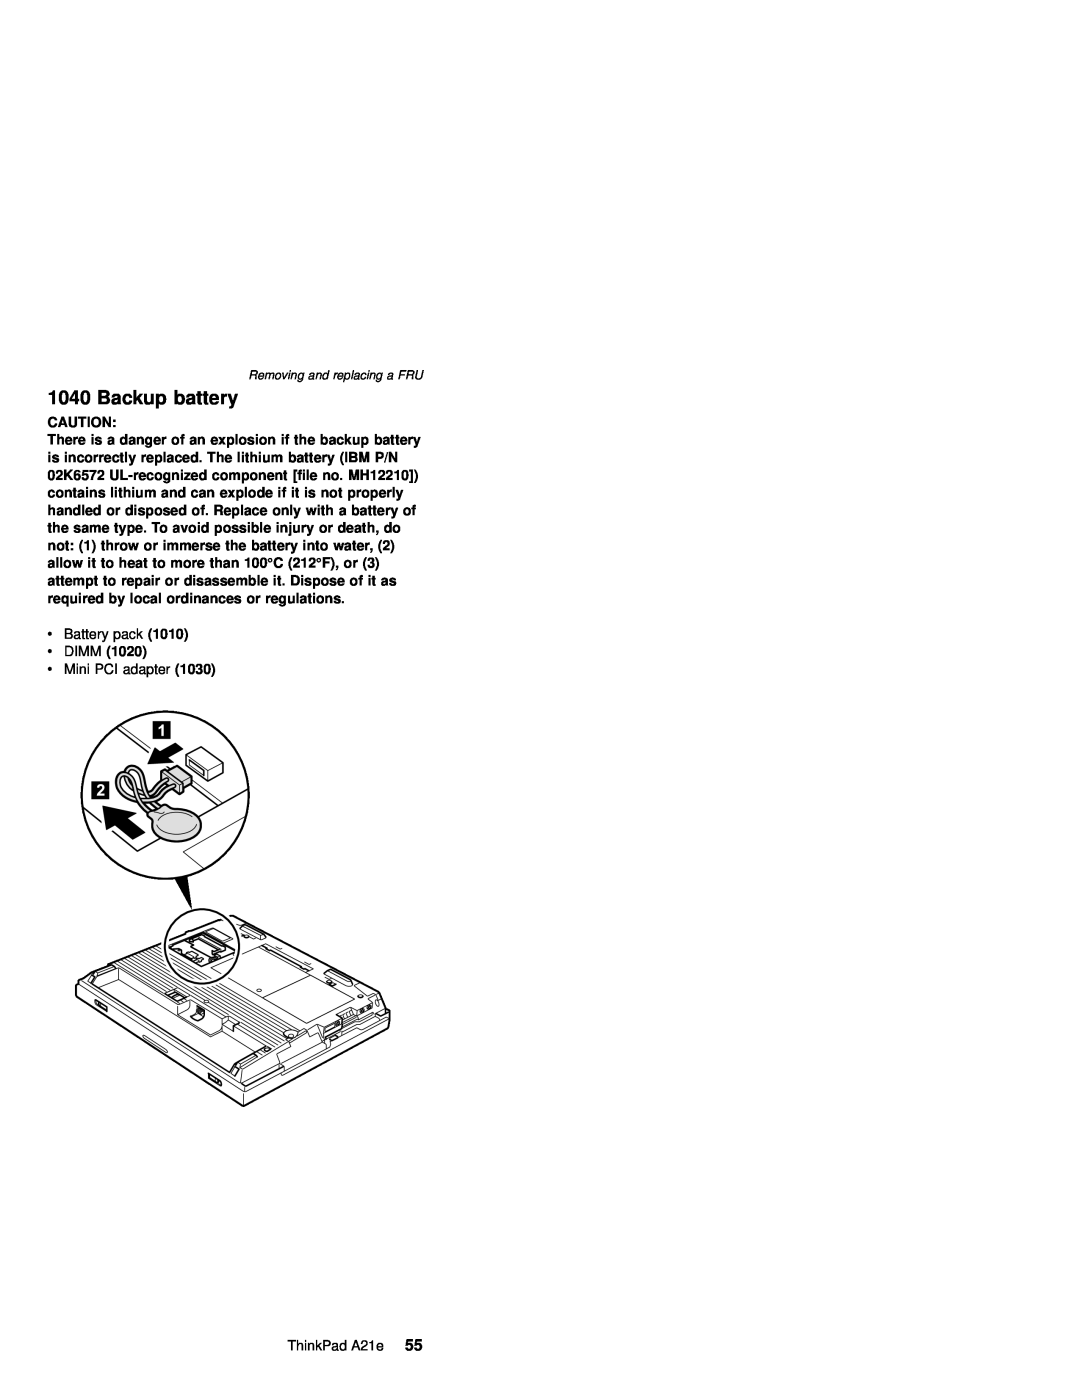 IBM MT 2632 manual Backup battery, v DIMM 